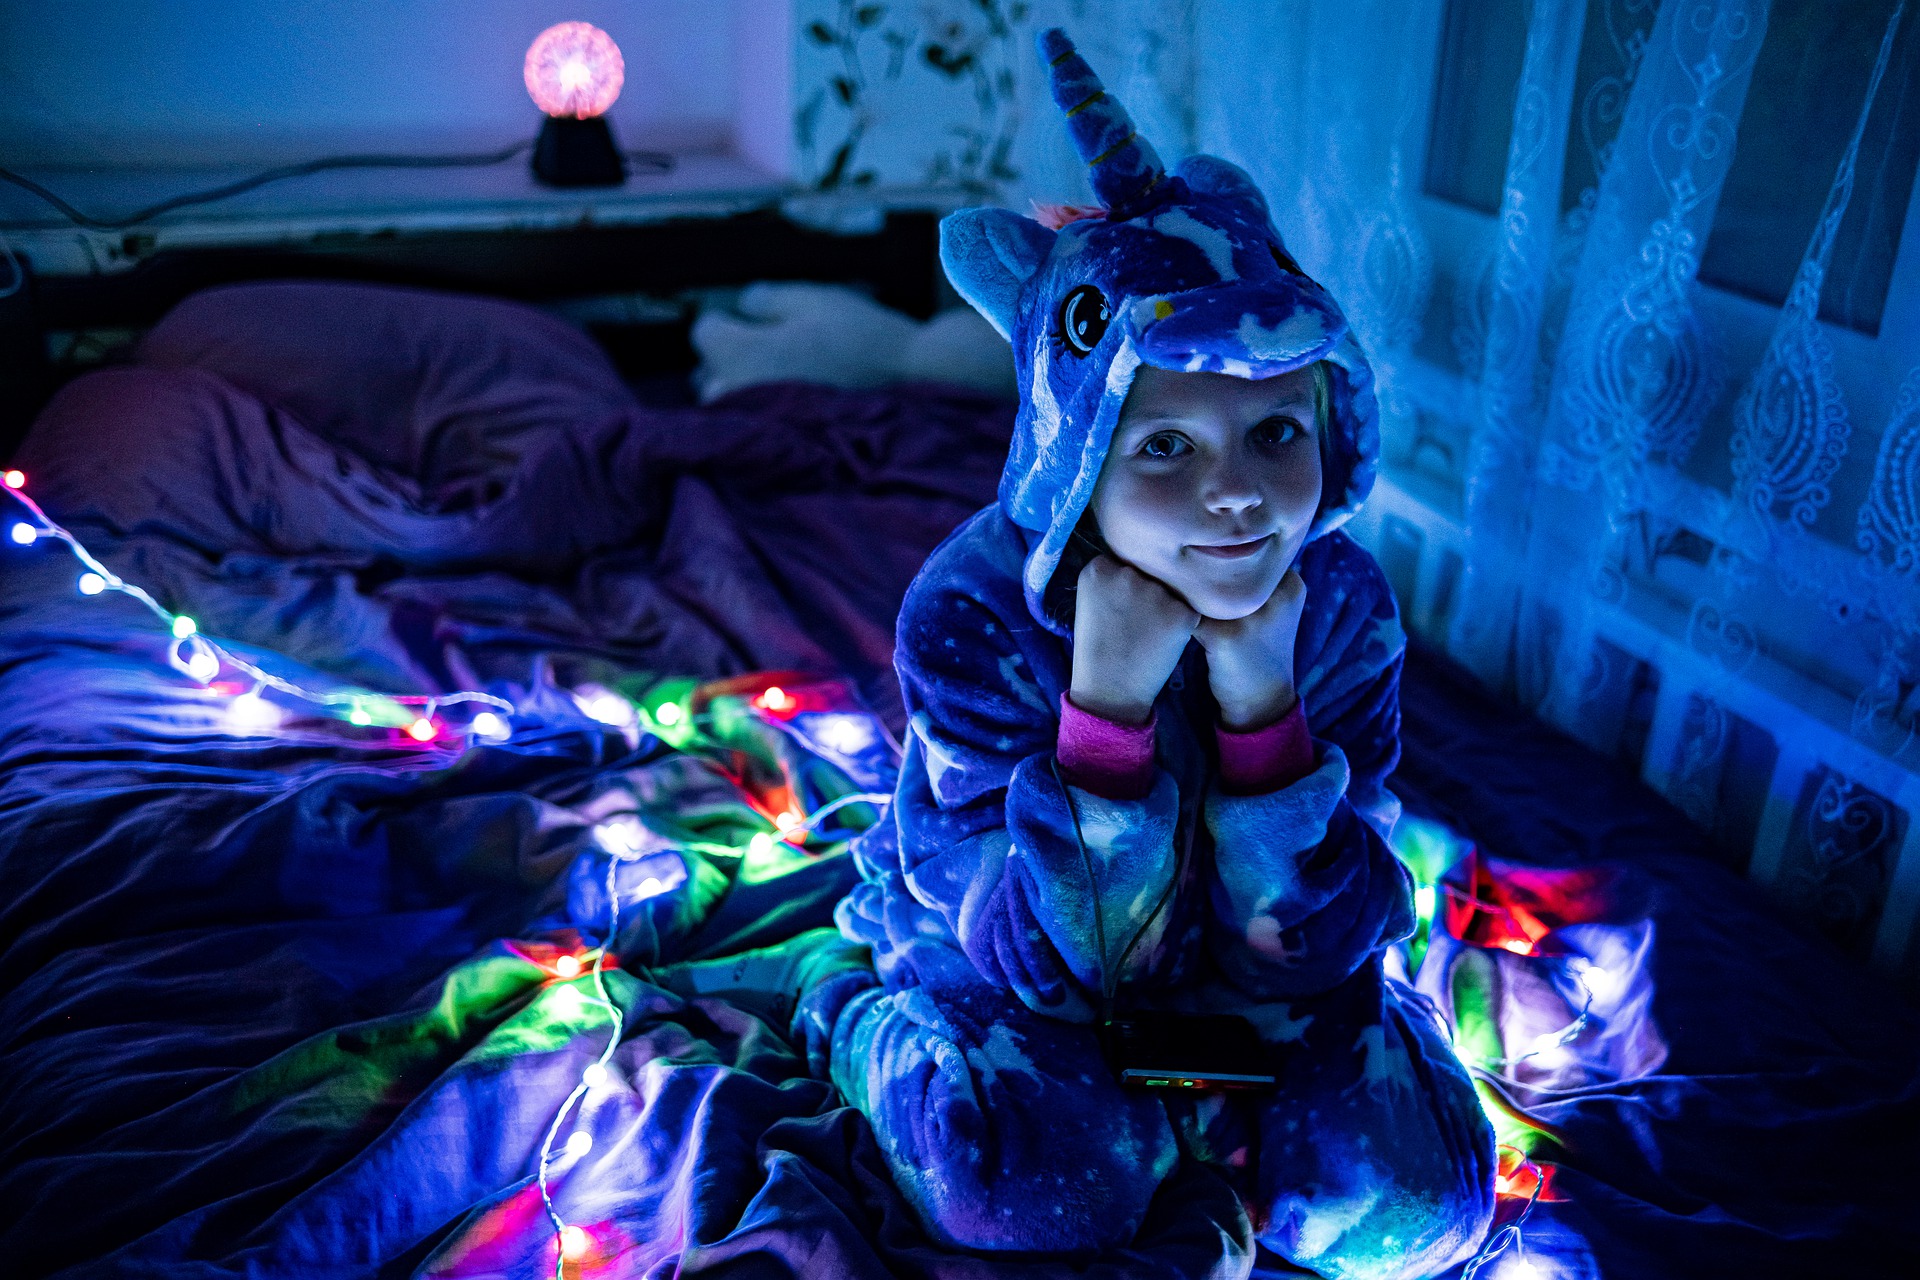 Quelle veilleuse LED choisir pour une chambre d'enfant ? - MaFamilleZen